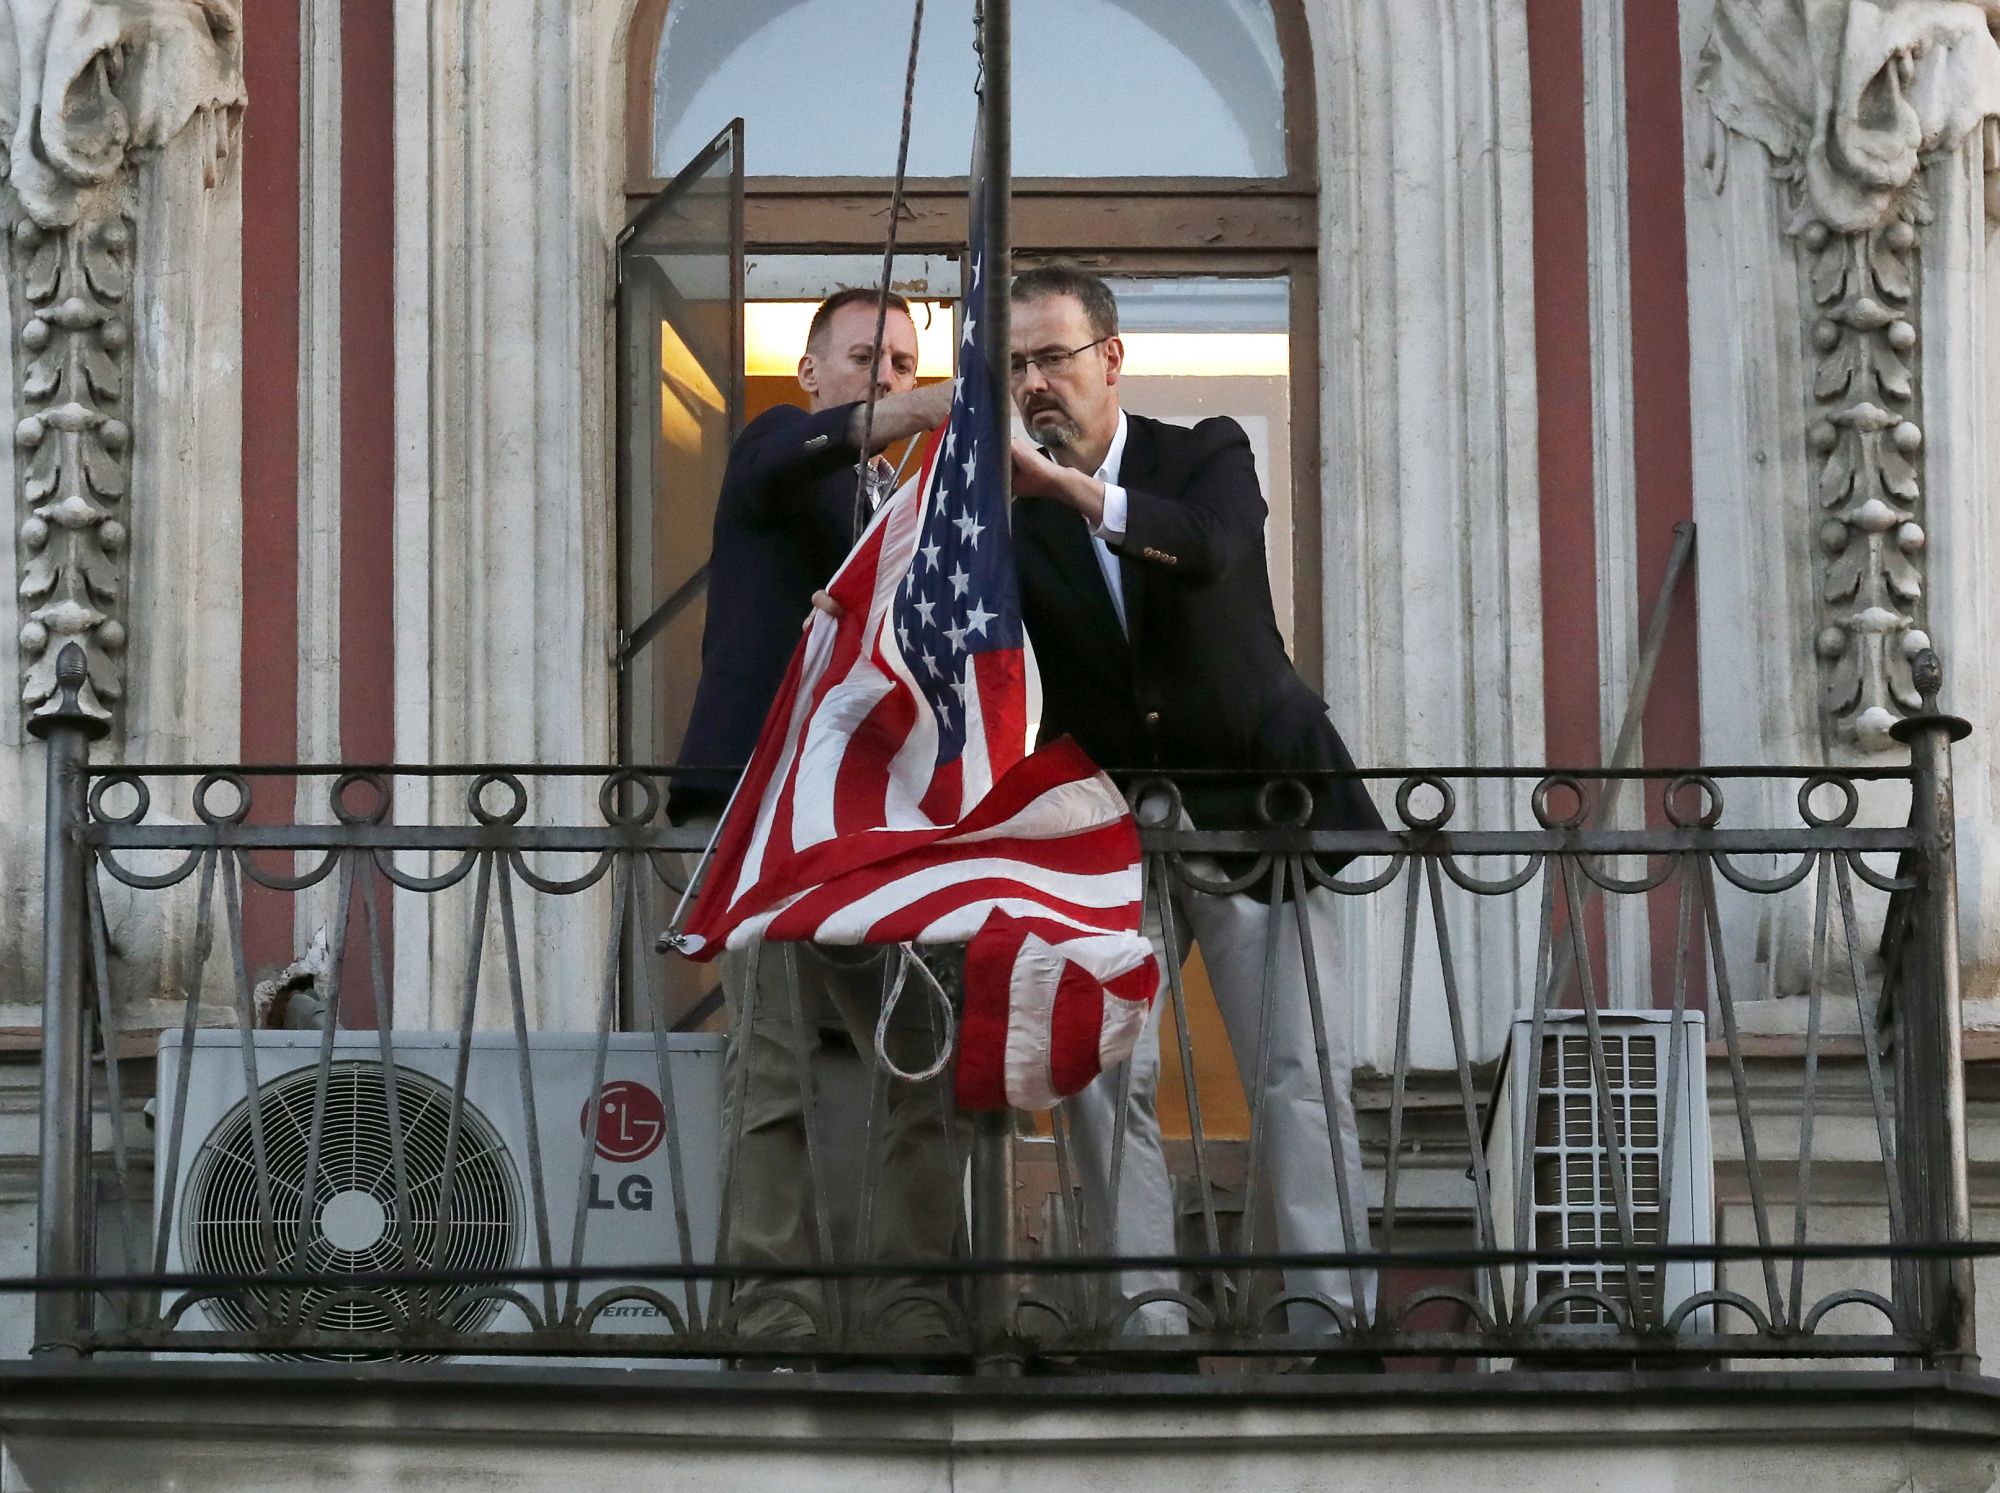 A szentpétervári amerikai konzulátus munkatársai leveszik az amerikai zászlót 2018. március 31-én. Az amerikai szankciókra válaszul Oroszország 60 amerikai diplomatát utasított ki és a szentpétervári konzulátus bezárásáról döntött. Az orosz hatóságok két napot adtak az épület teljes kiürítésére. EPA/ANATOLY MALTSEV